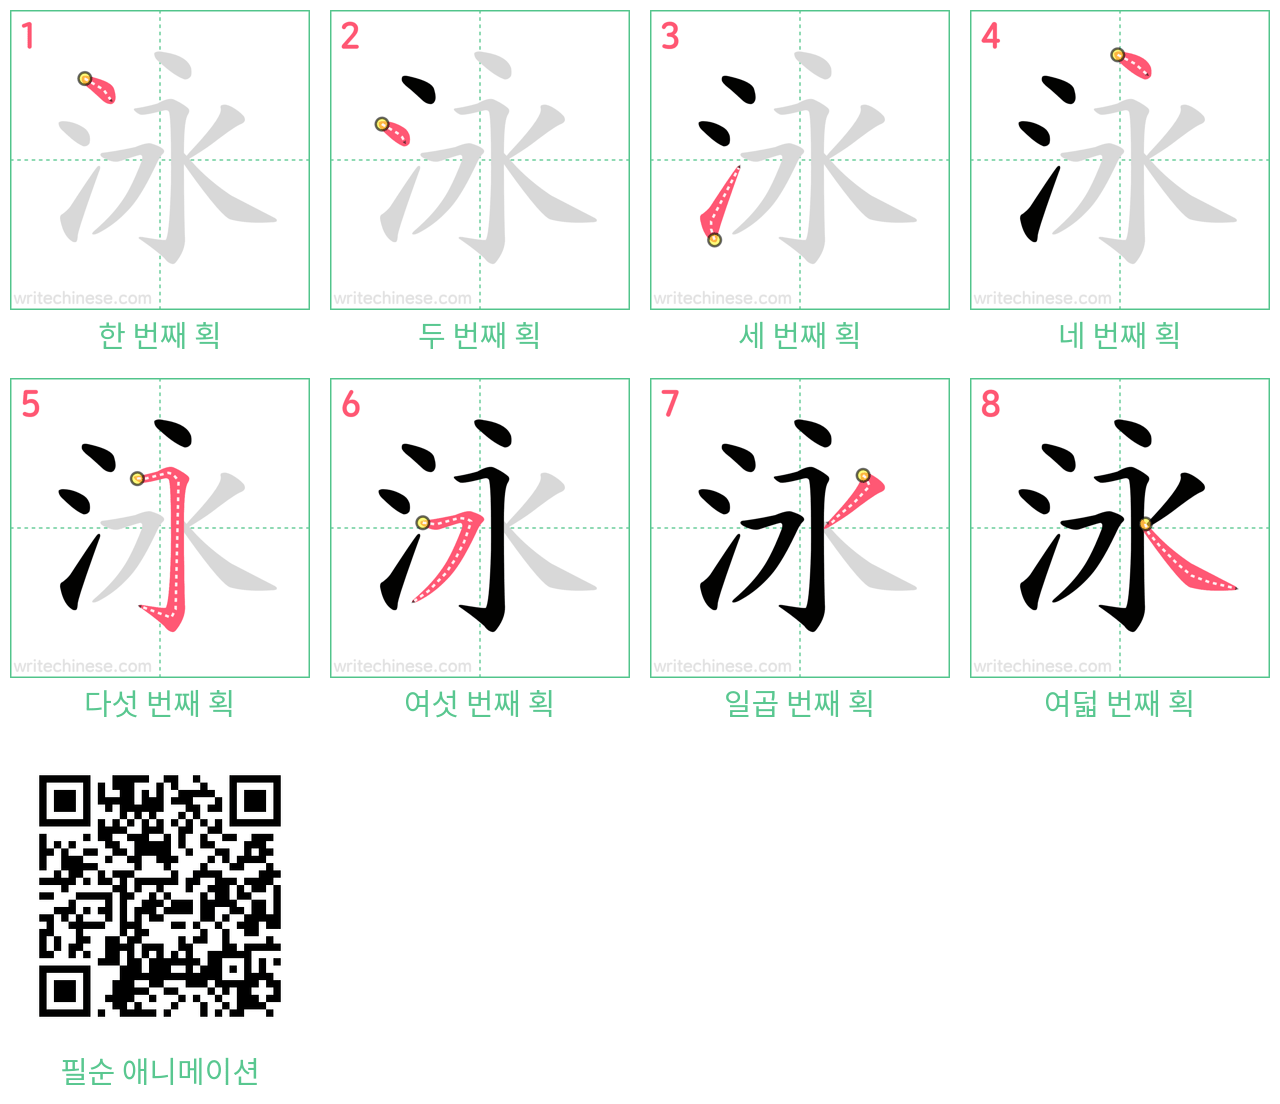 泳 step-by-step stroke order diagrams